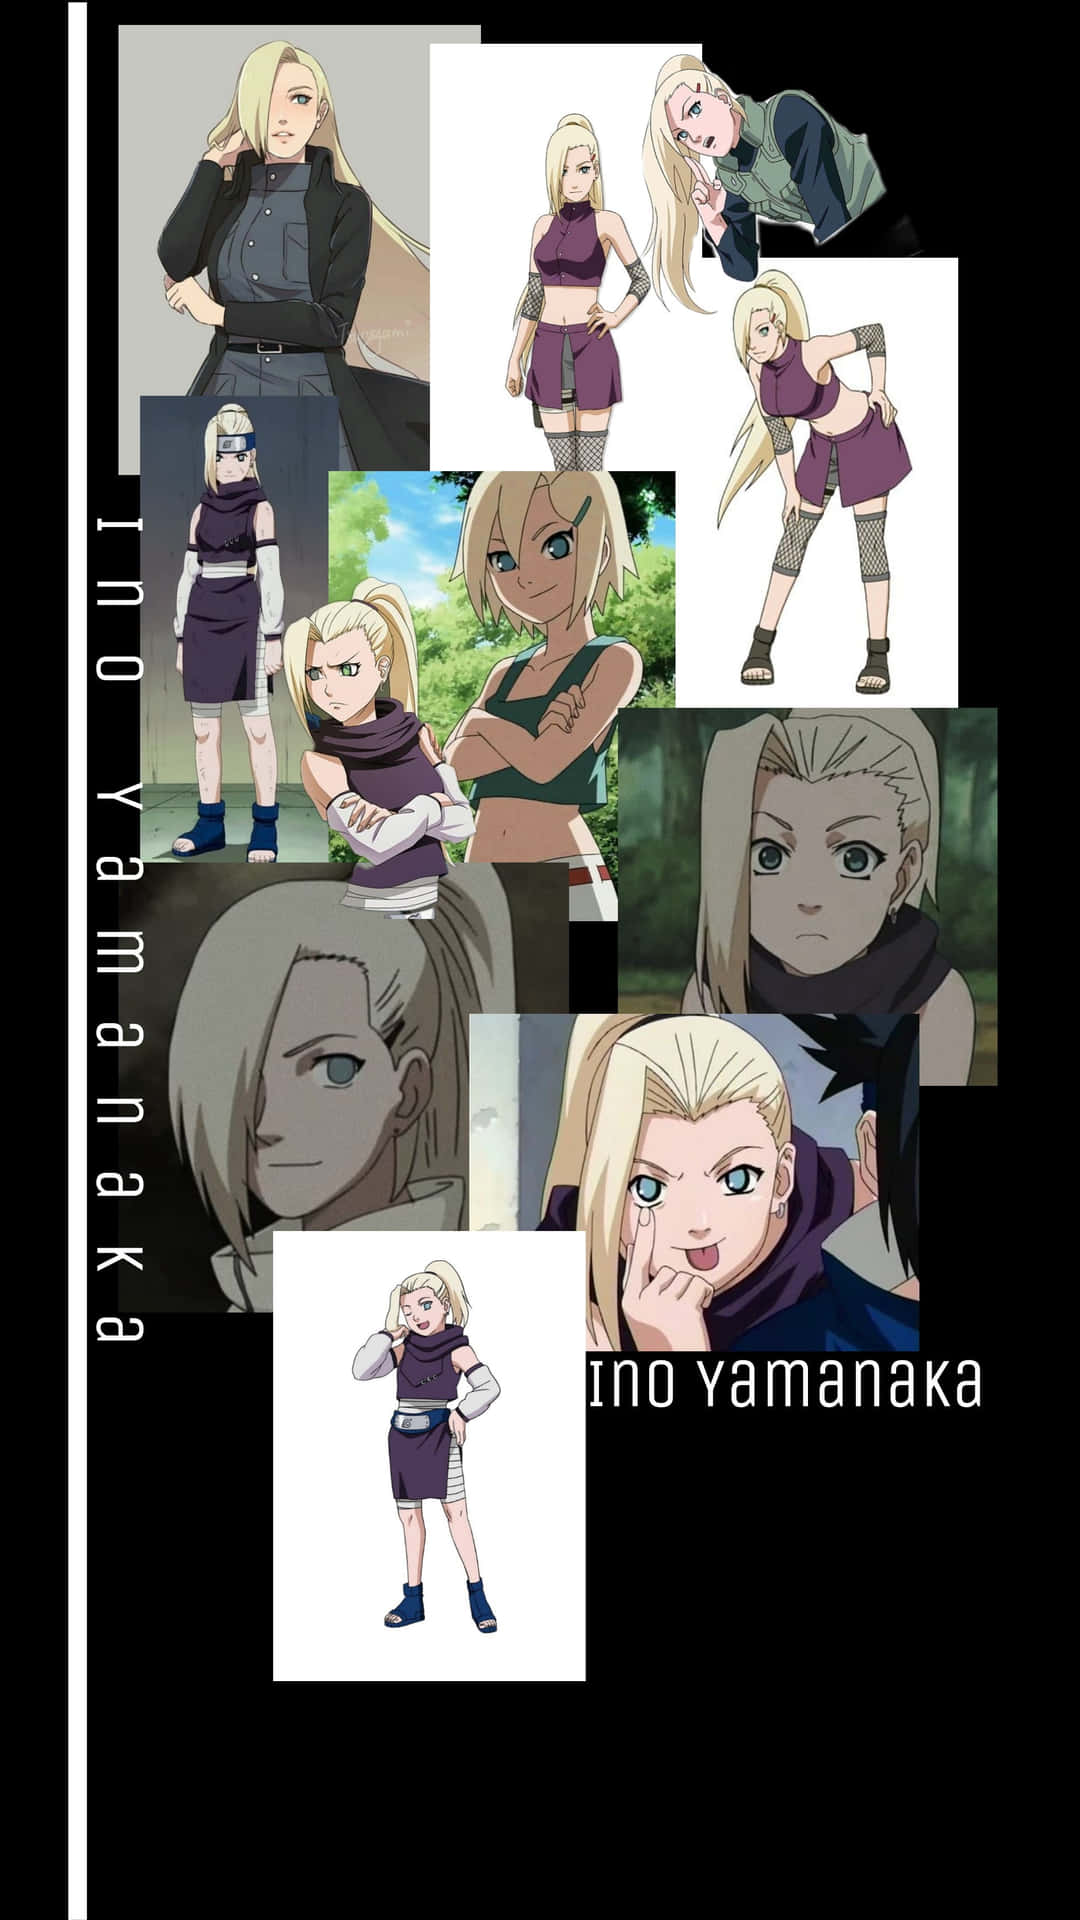 Ino Yamanaka Collage Wallpaper